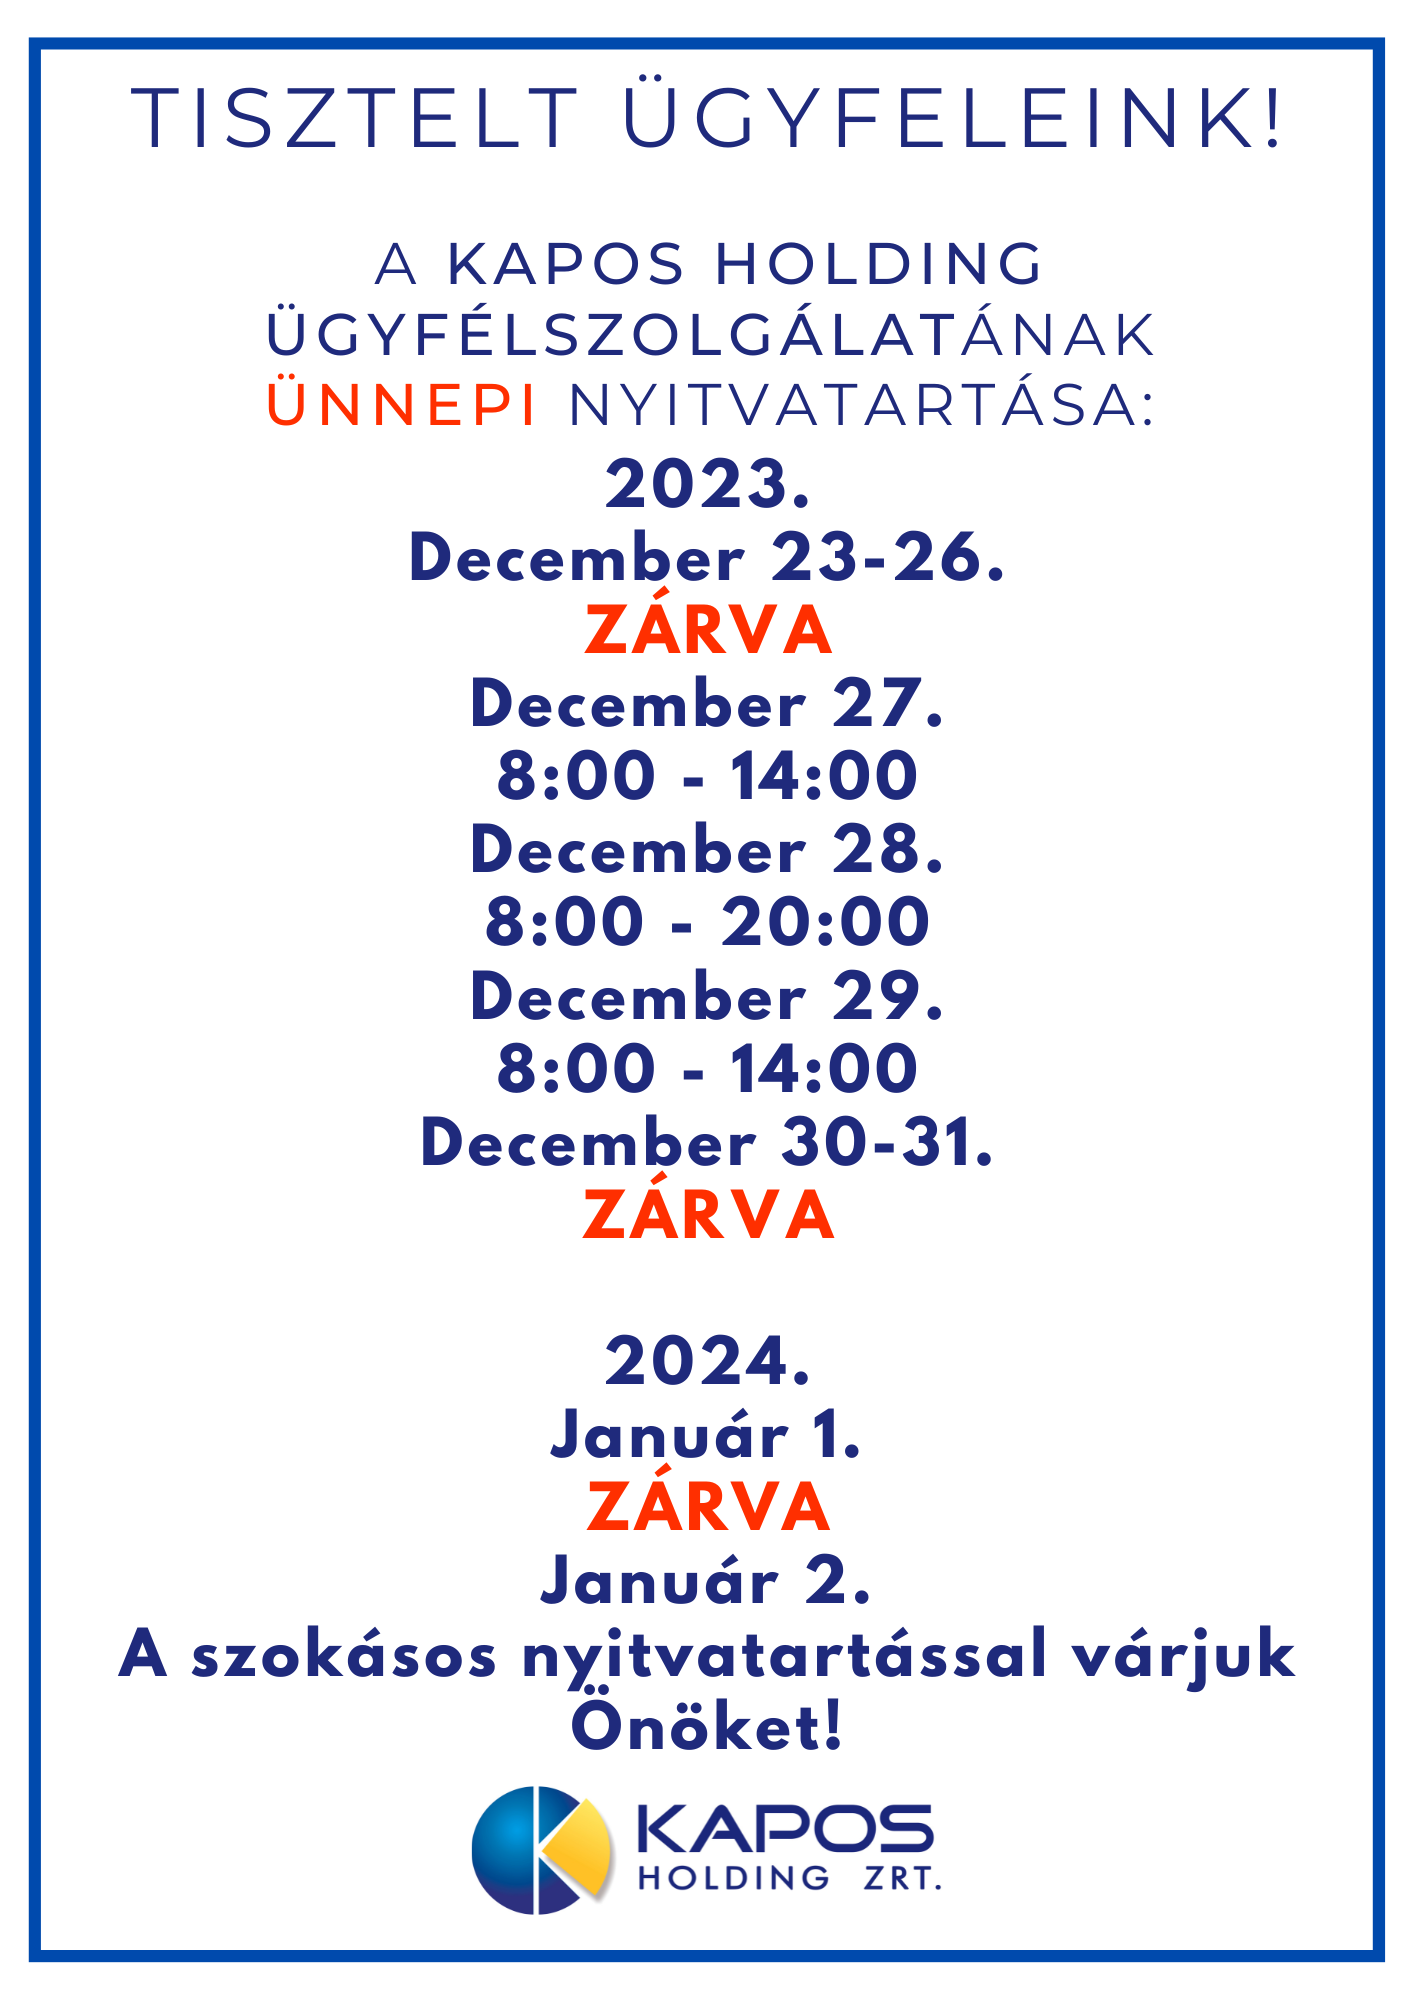 Tisztelt Ügyfeleink!  A Kapos Holding ügyfélszolgálatának Ünnepi nyitvatartása: 2023. December 23-26. ZÁRVA December 27. 8:00 - 14:00 December 28. 8:00 - 20:00 December 29. 8:00 - 14:00 December 30-31. ZÁRVA  2024. Január 1. ZÁRVA Január 2. A szokásos nyitvatartással várjuk Önöket!